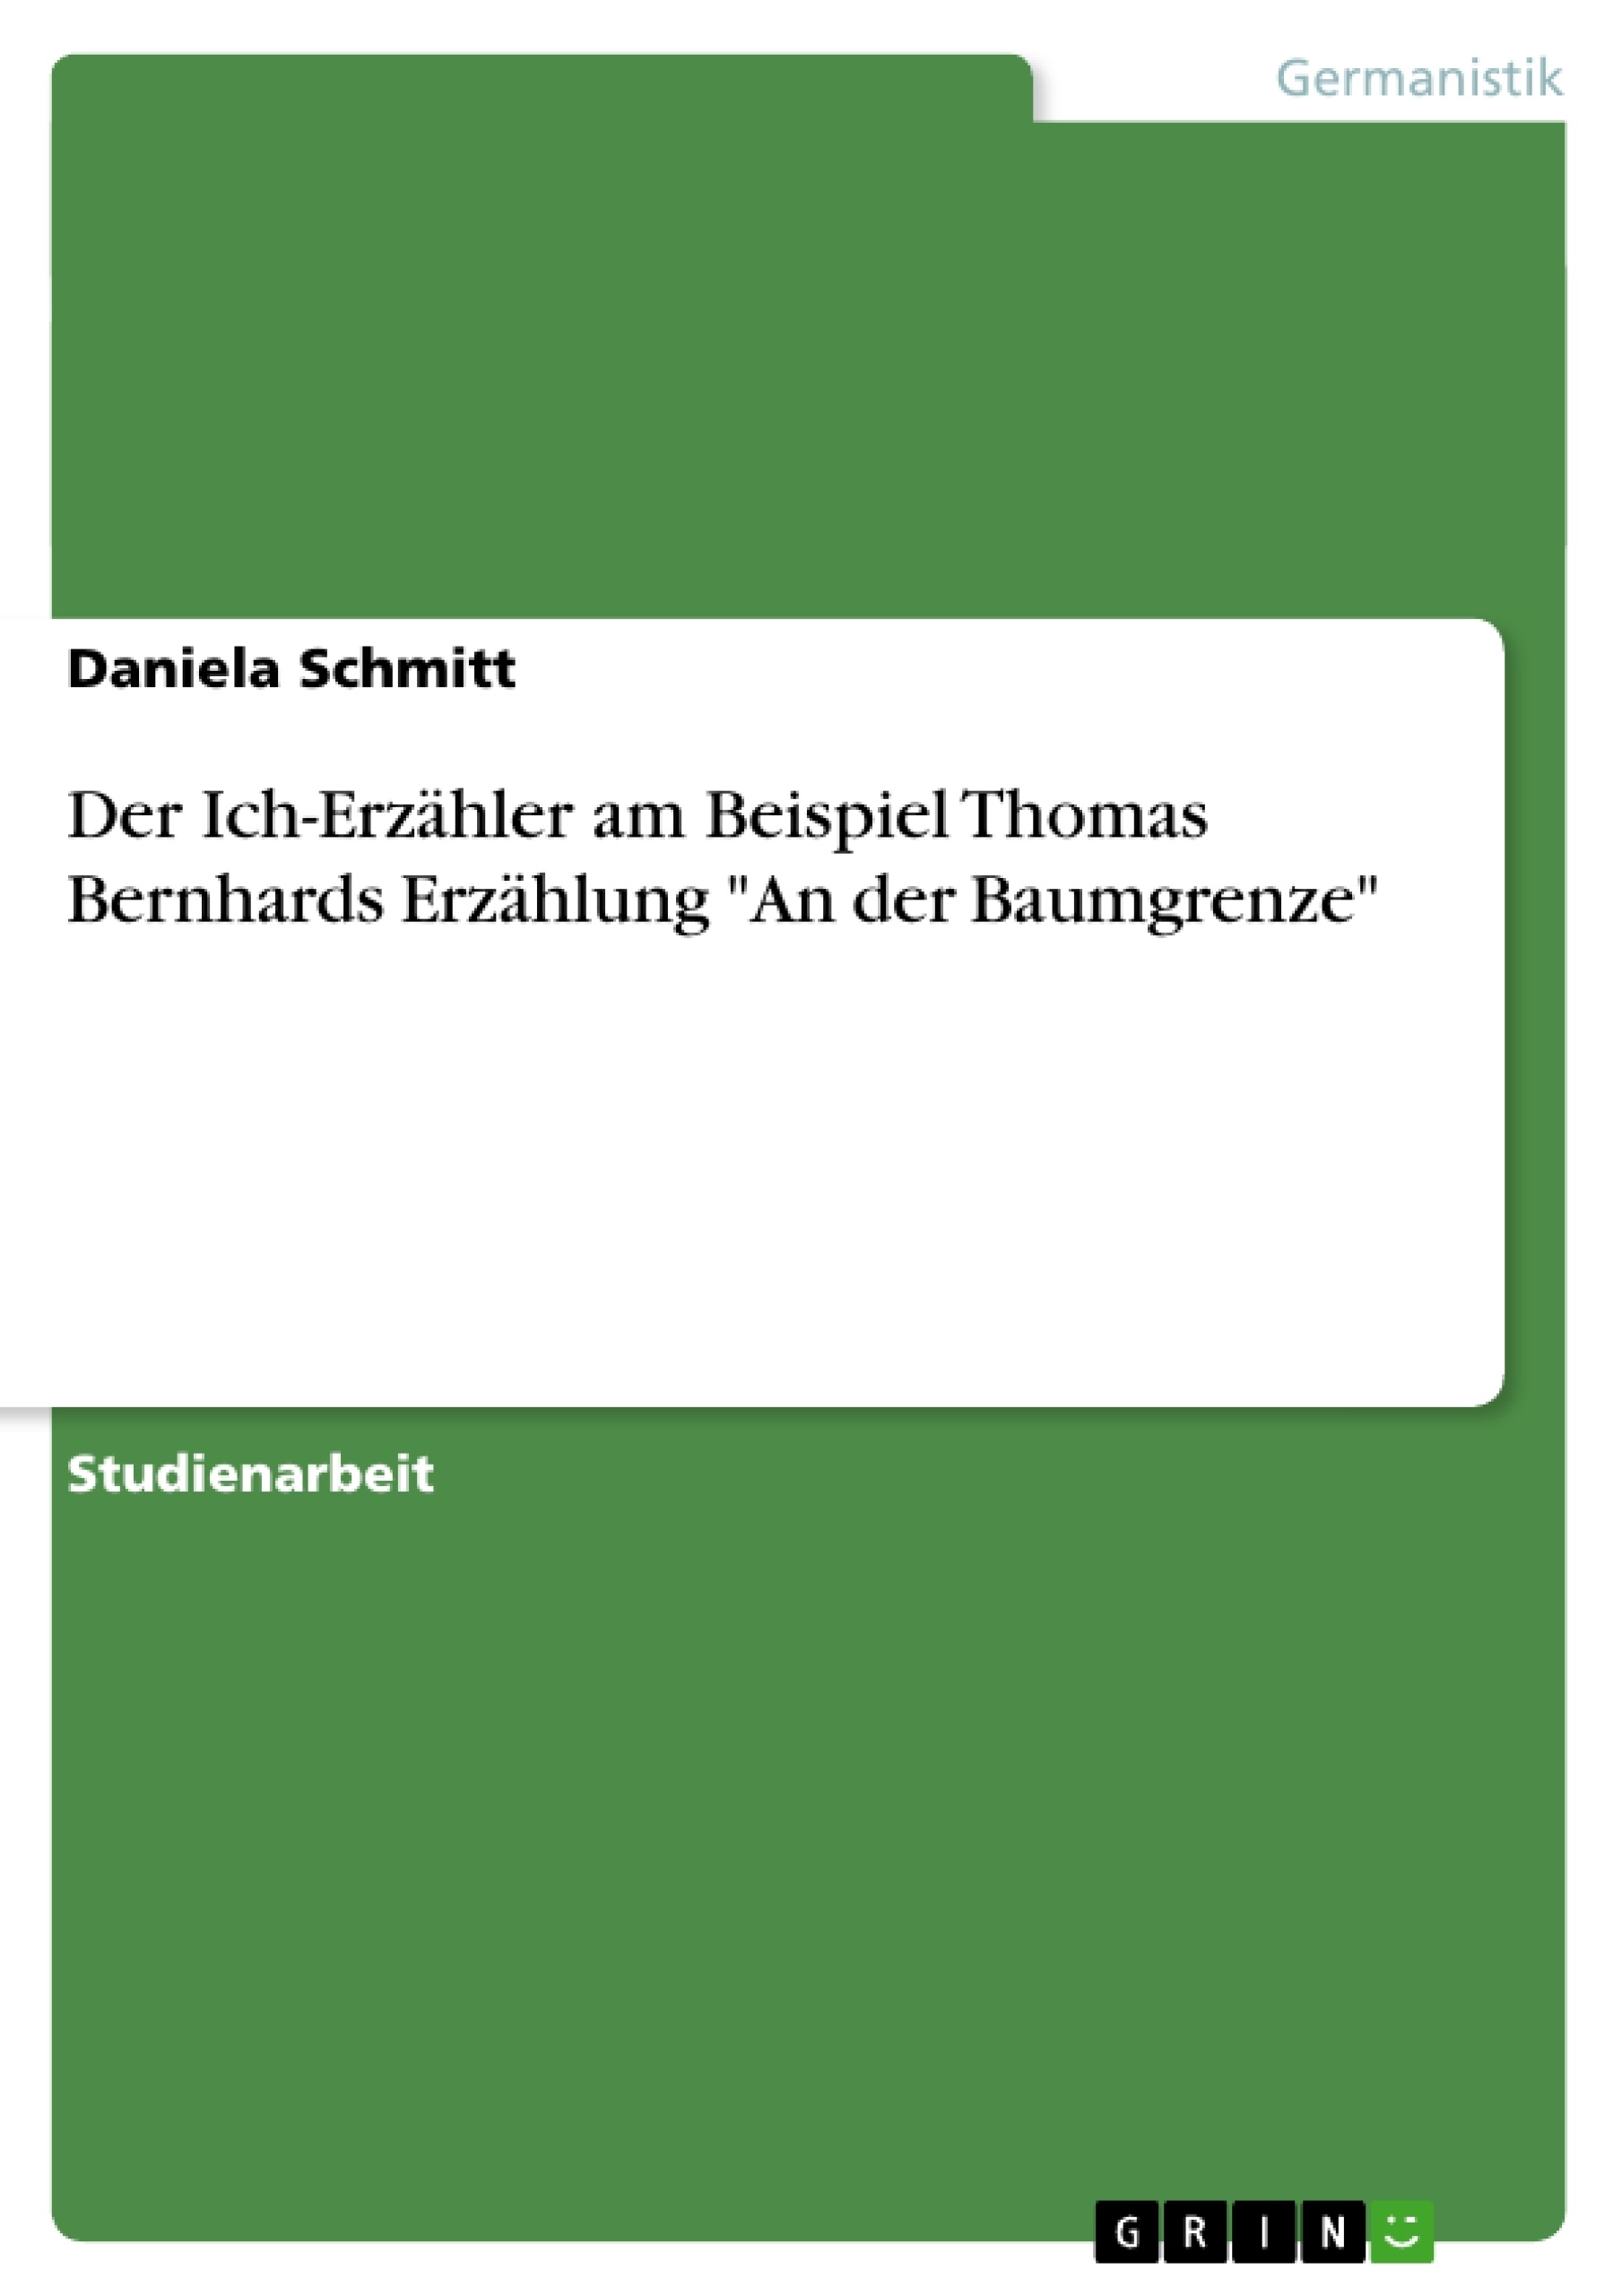 Título: Der Ich-Erzähler am Beispiel Thomas Bernhards Erzählung "An der Baumgrenze"